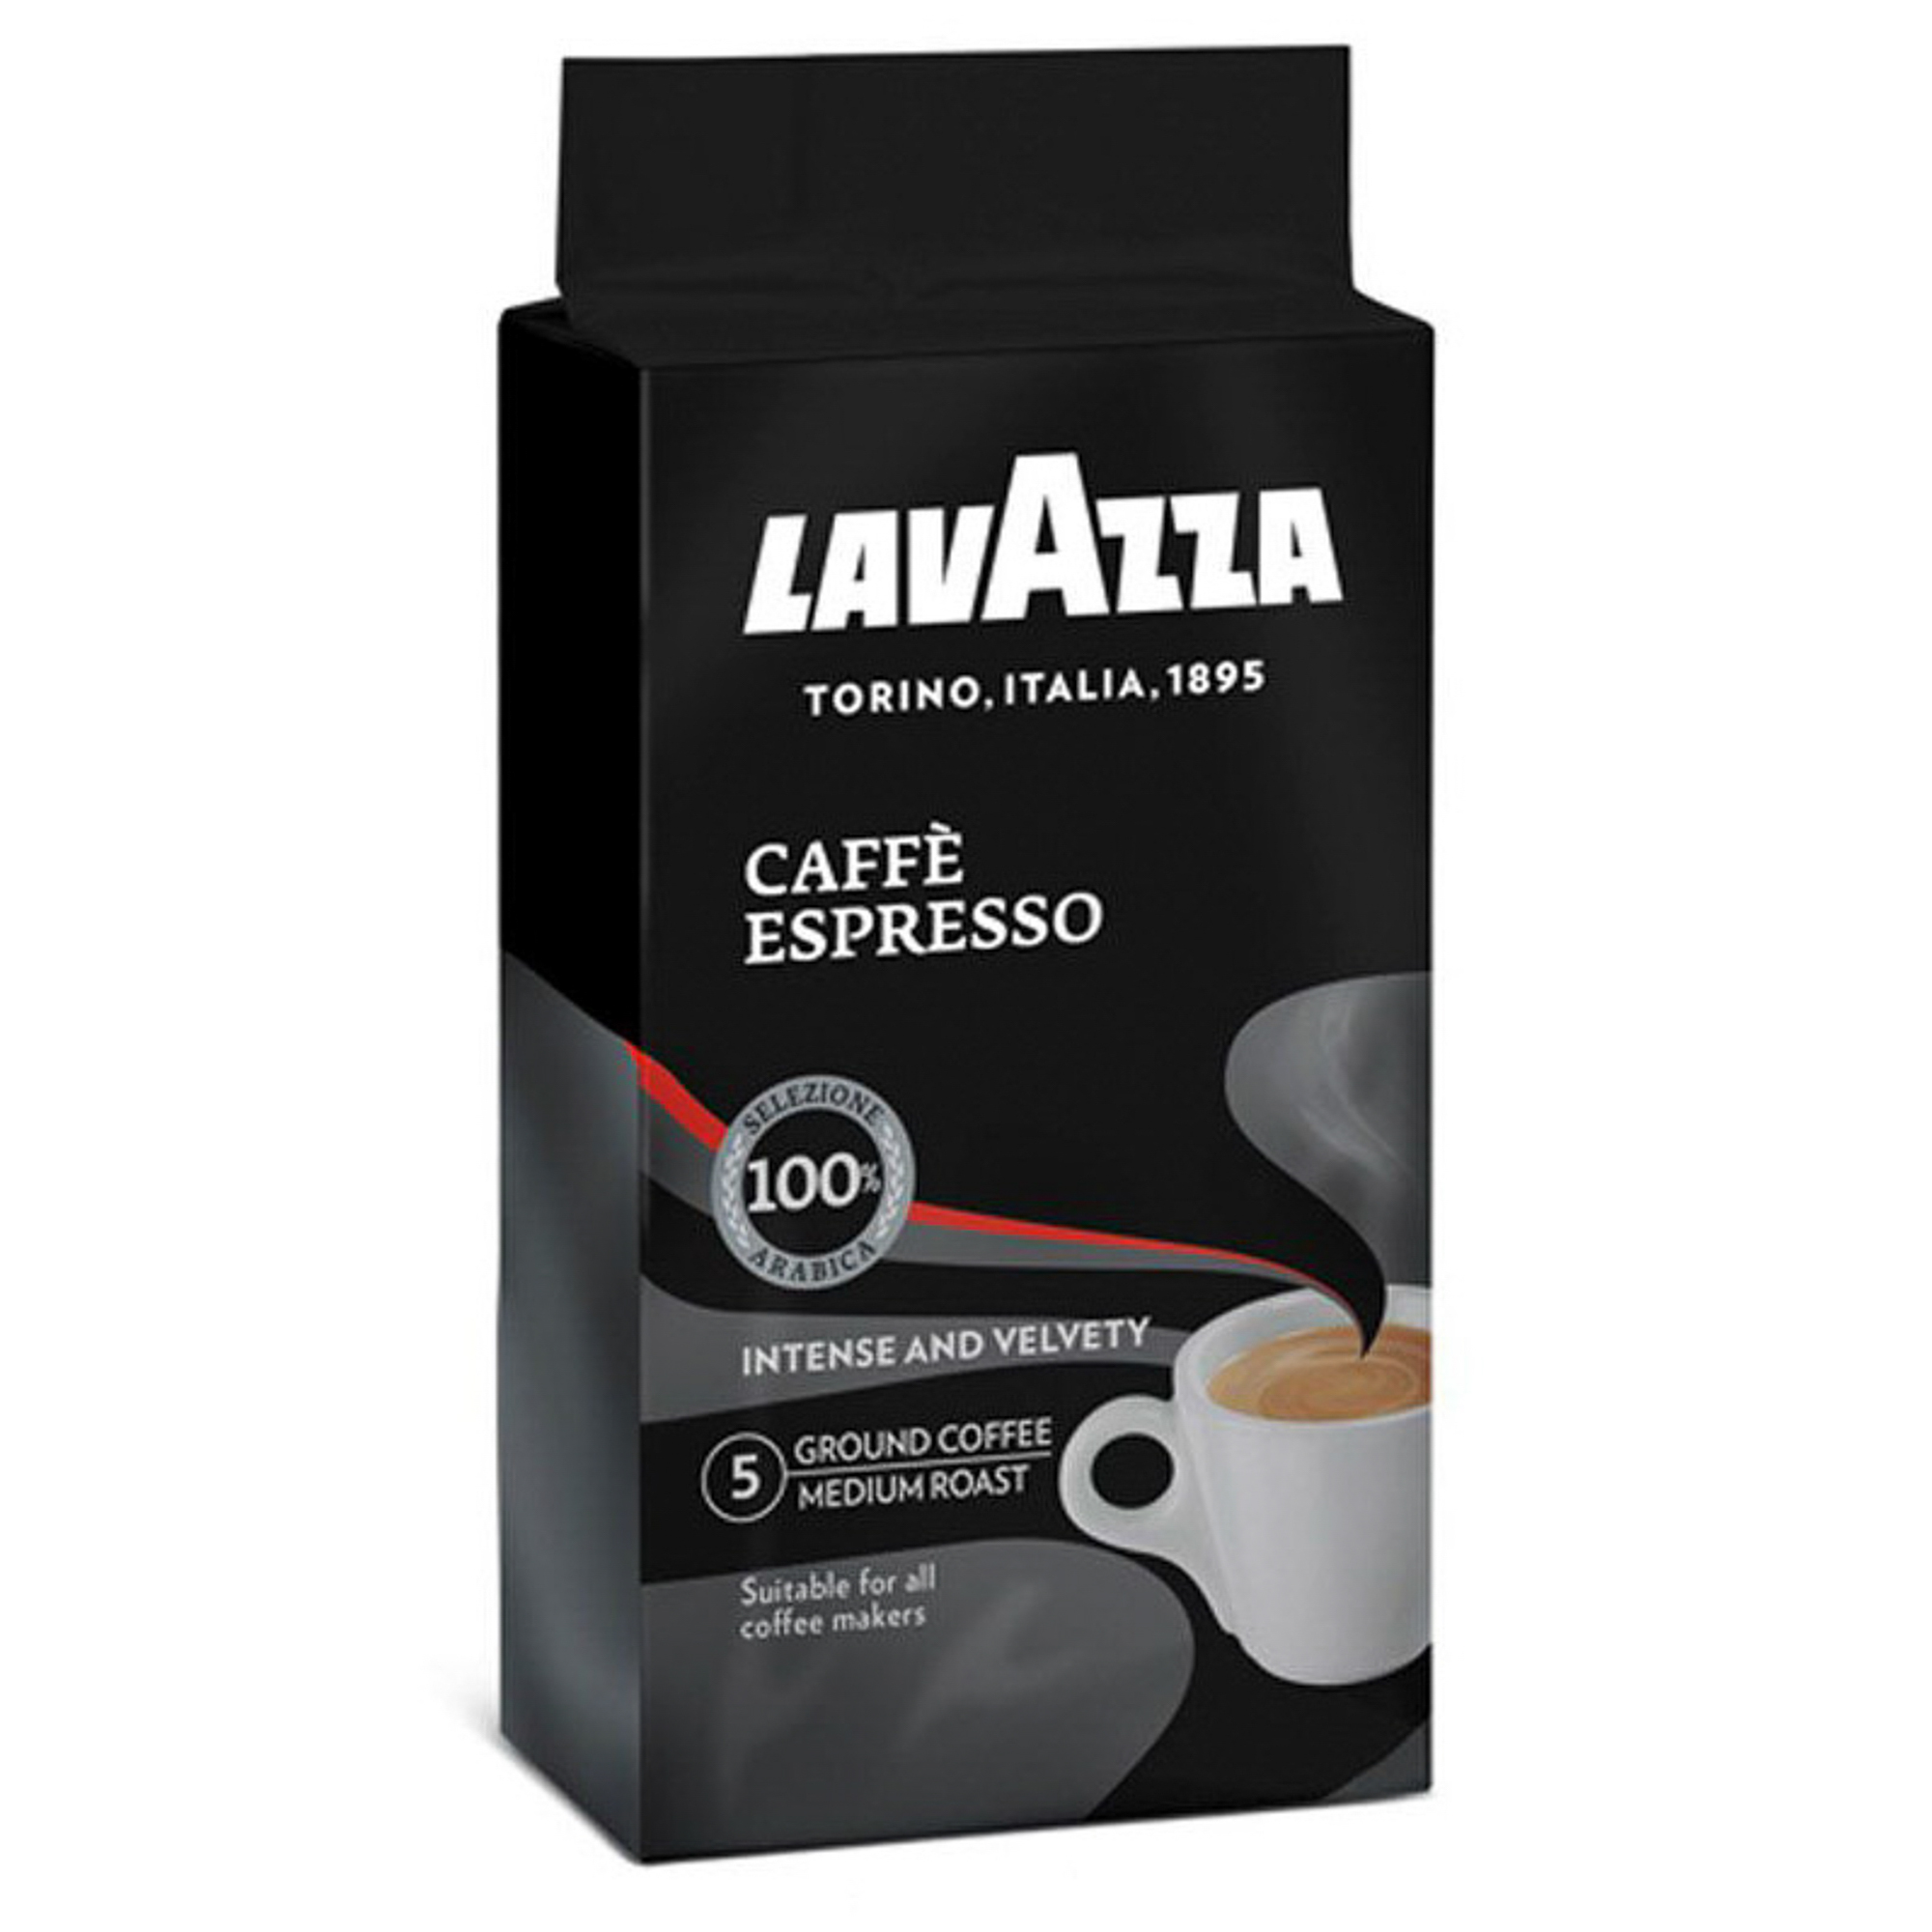 Кофе молотый Lavazza Caffe Espresso 250 г кофе brai gran 100% арабика свежеобжаренный молотый в фильтр пакете 8 шт по 8 гр